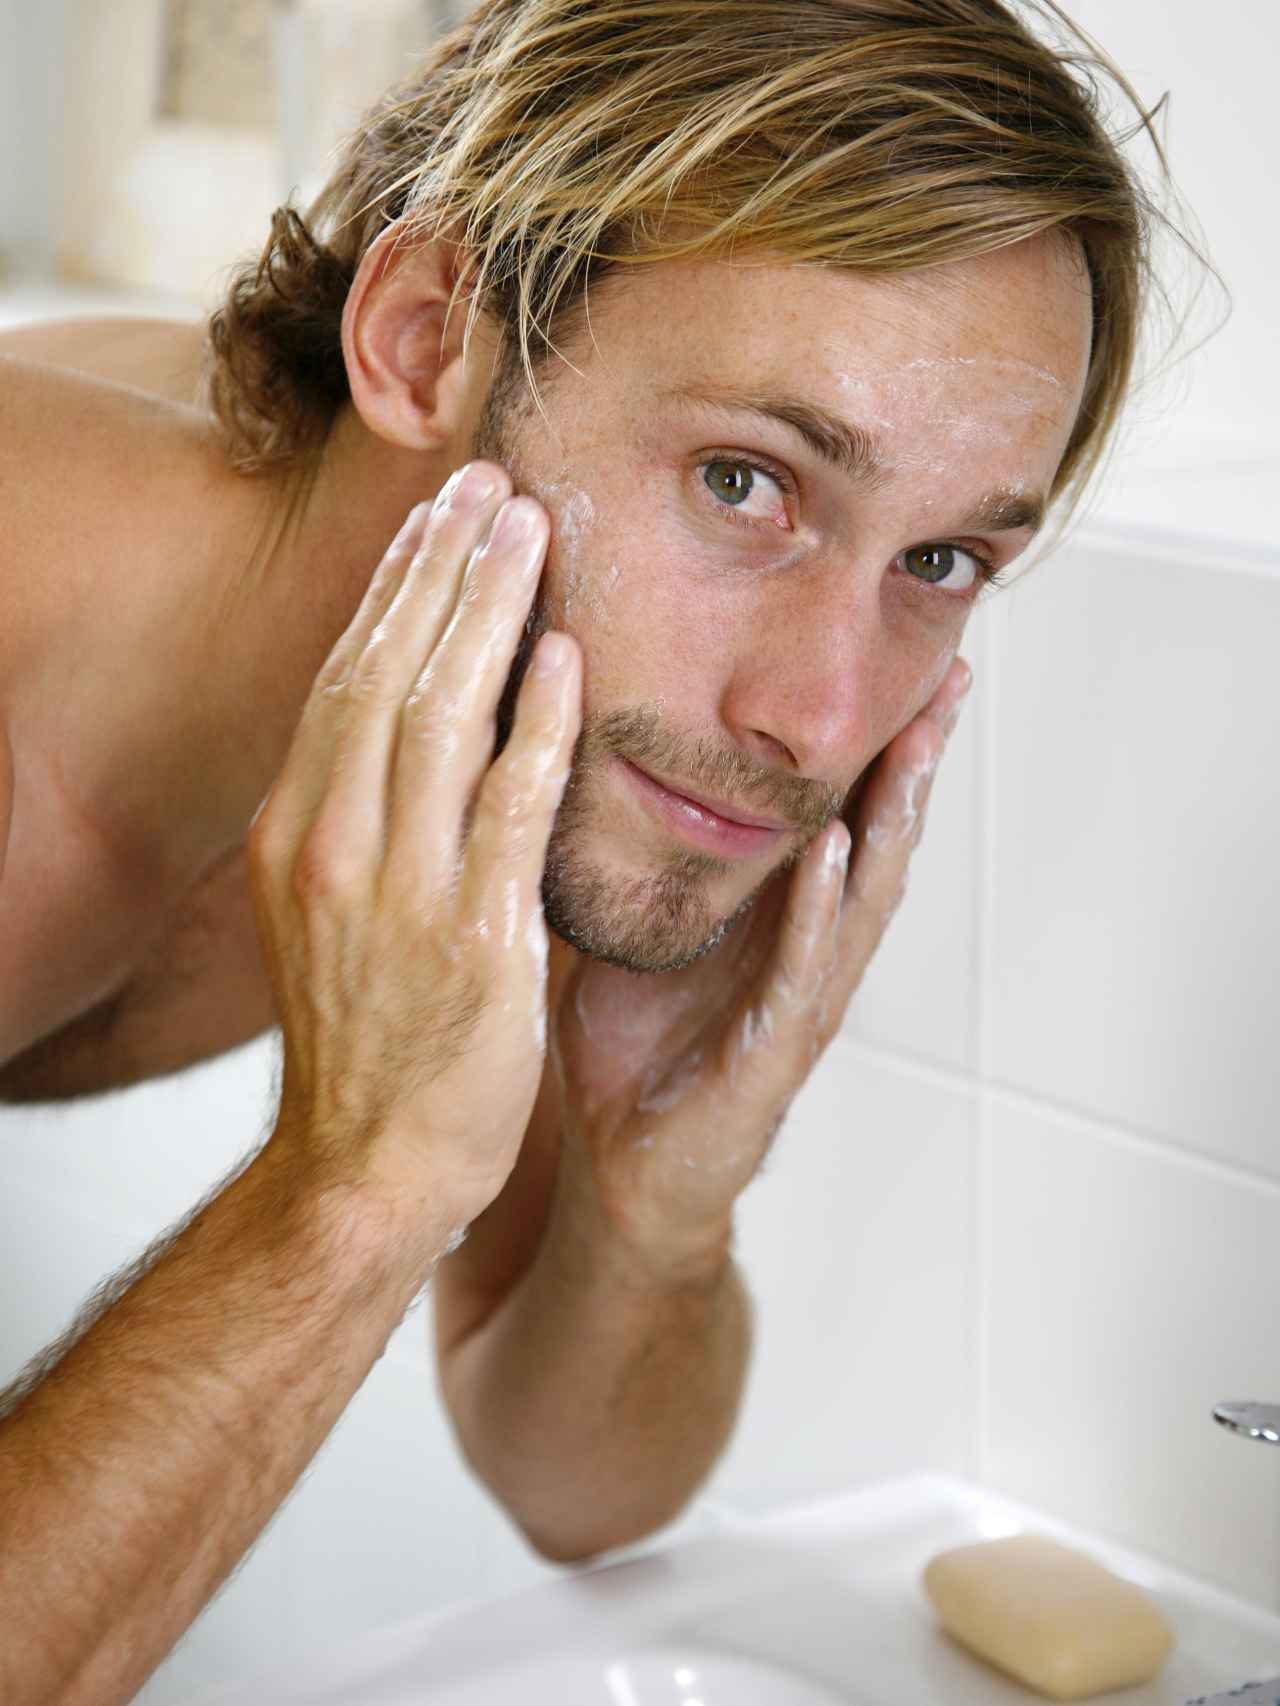 La limpieza es fundamental para el cuidado de la piel, también para hombres.